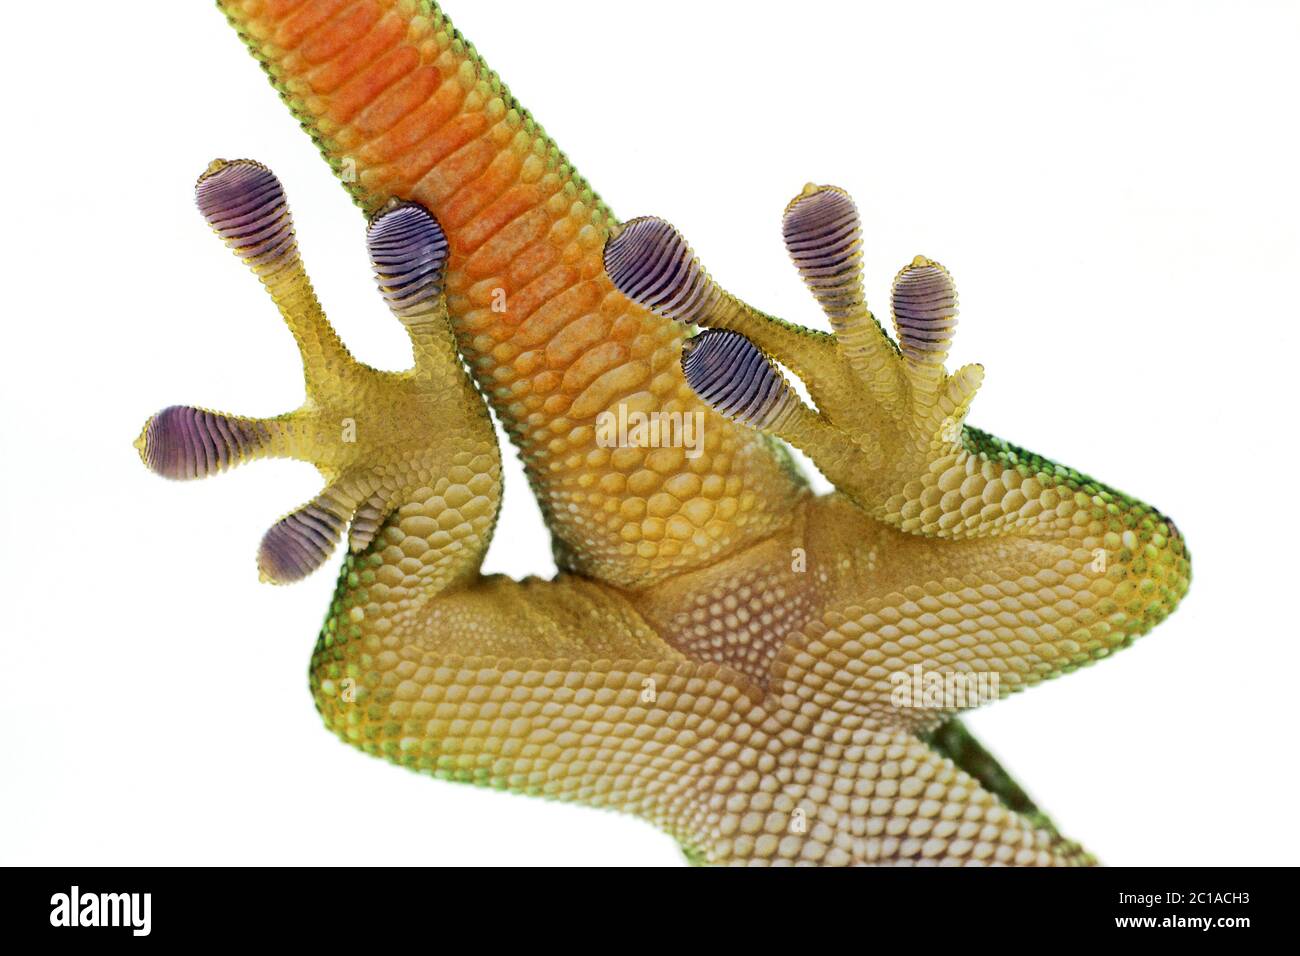 Piedi dettaglio del gecko gigante giorno Madagascar - Phelsuma grandis Foto Stock